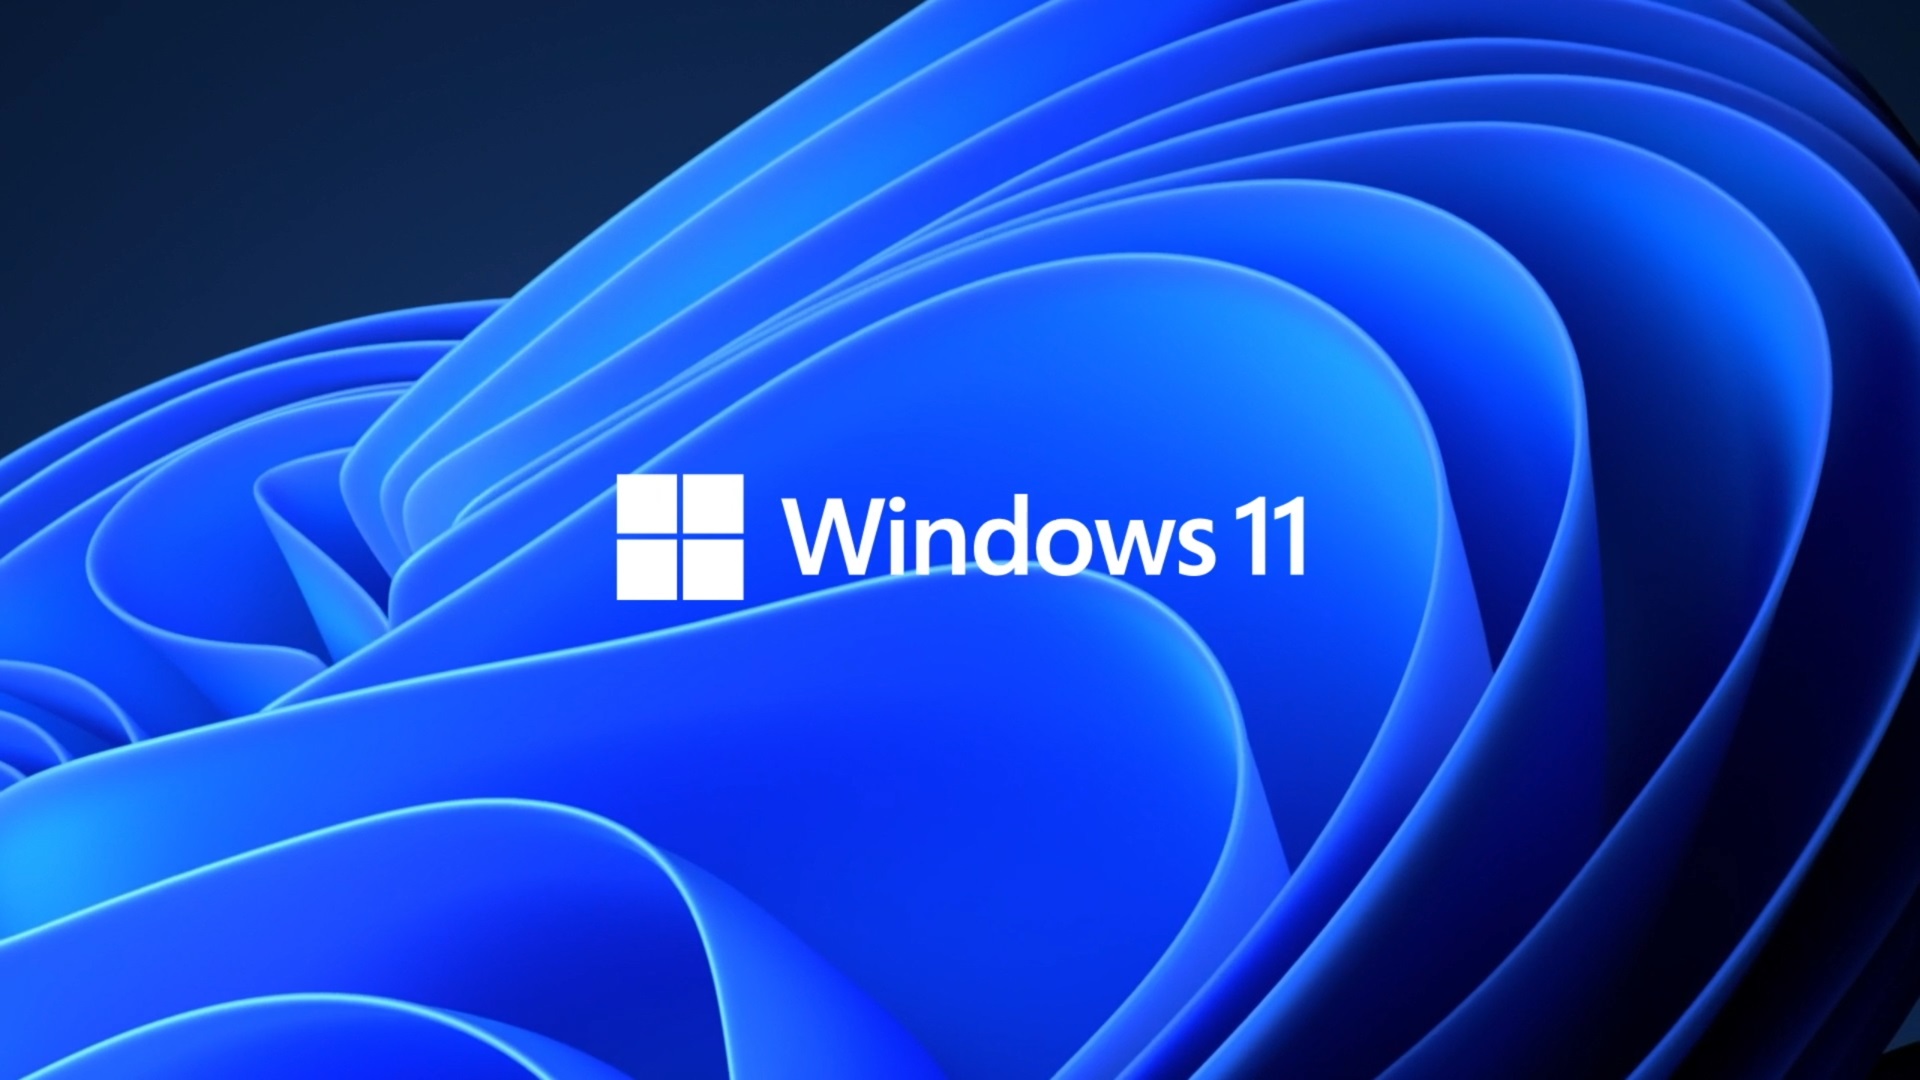 آموزش نصب Windows 11 از طریق USB